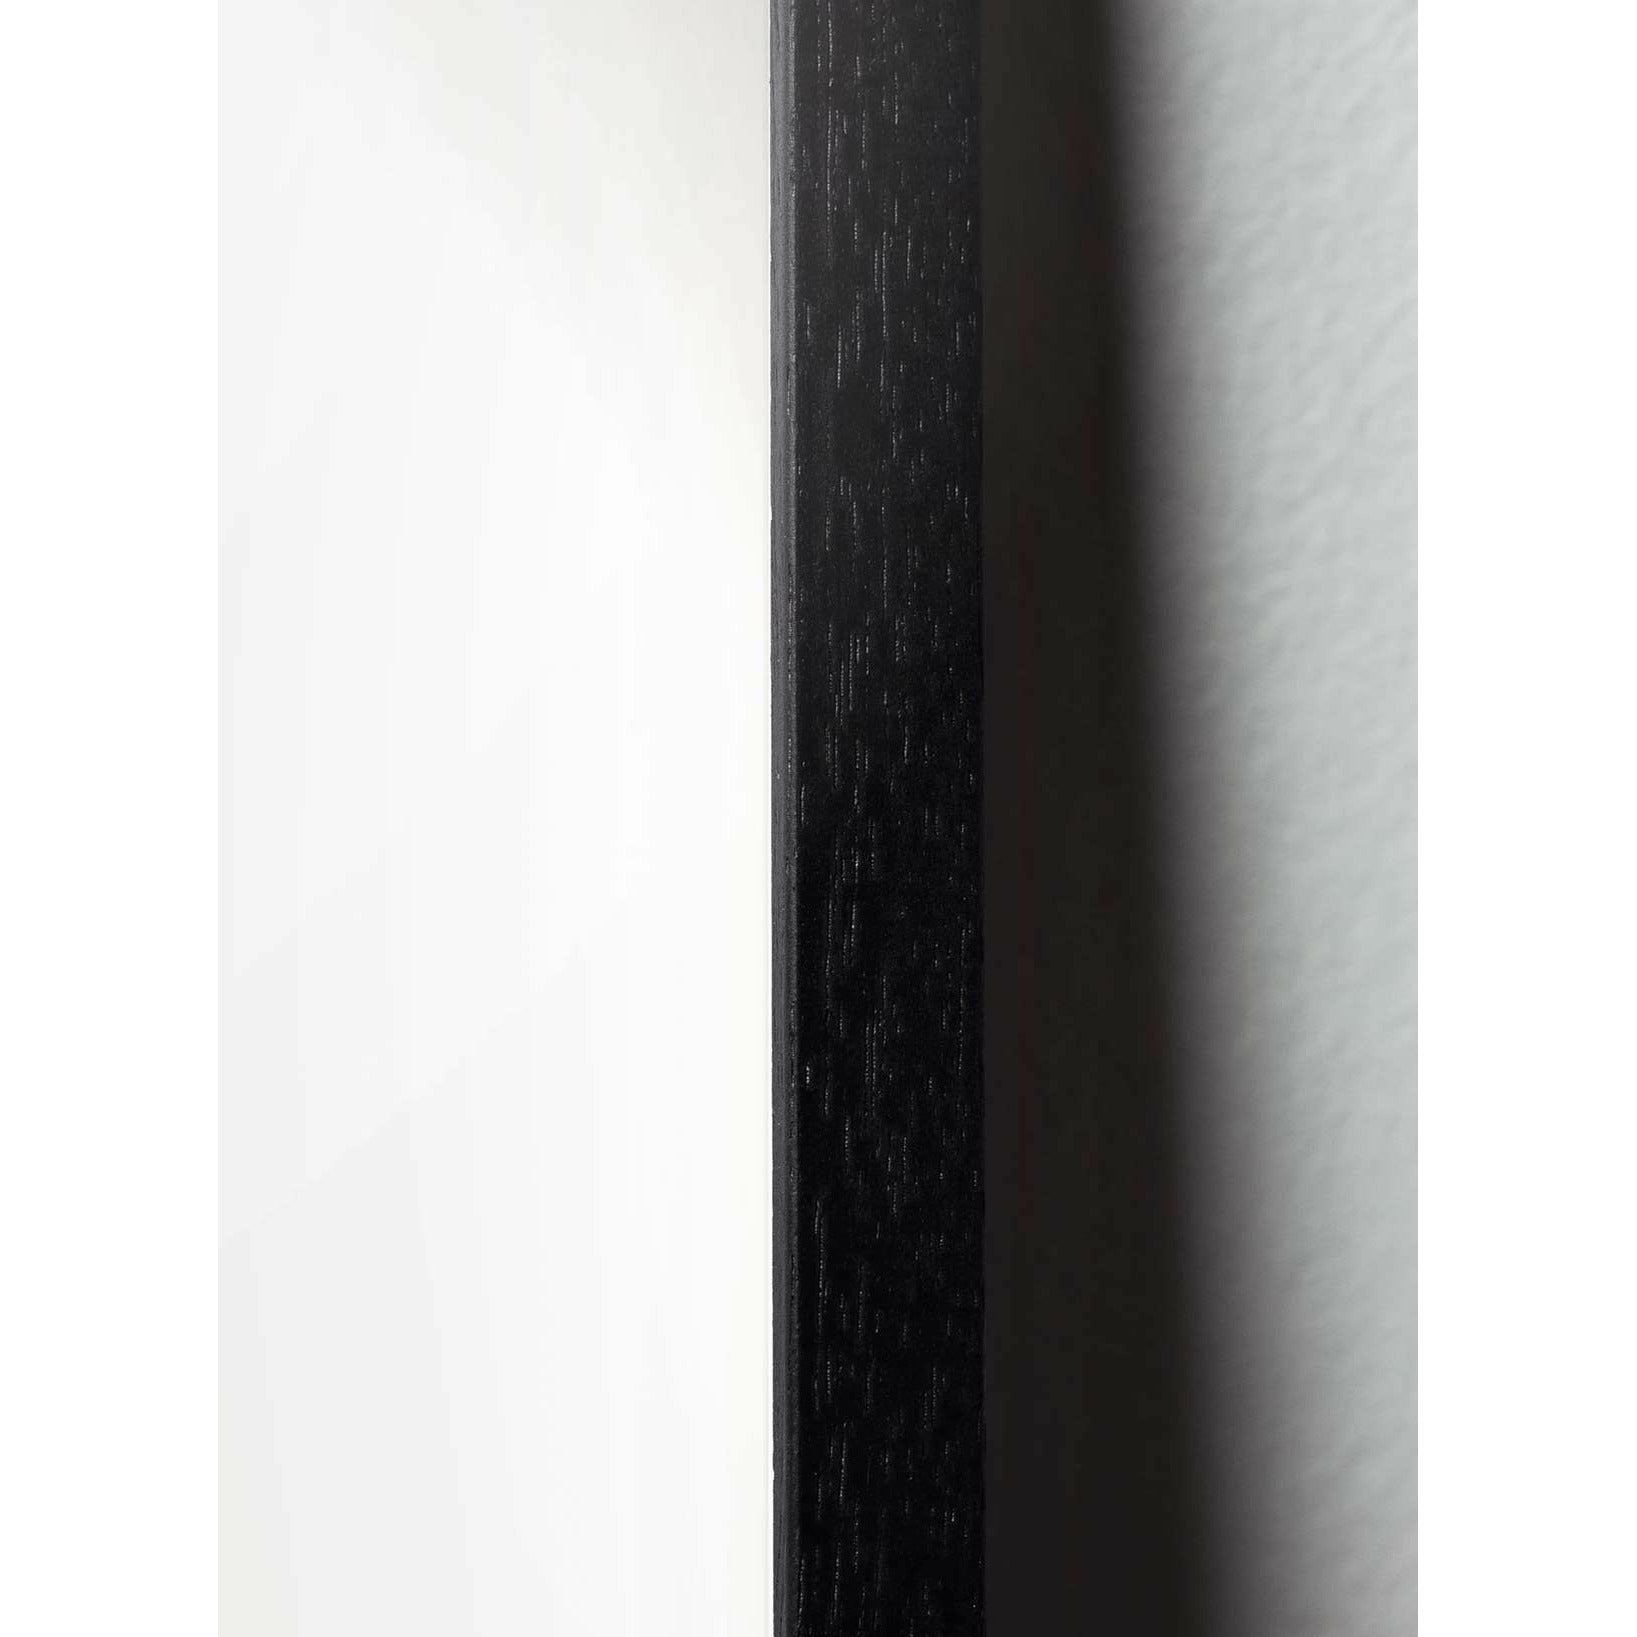 Pomysły plakat jaja, rama wykonana z czarnego lakierowanego drewna A5, brązowy